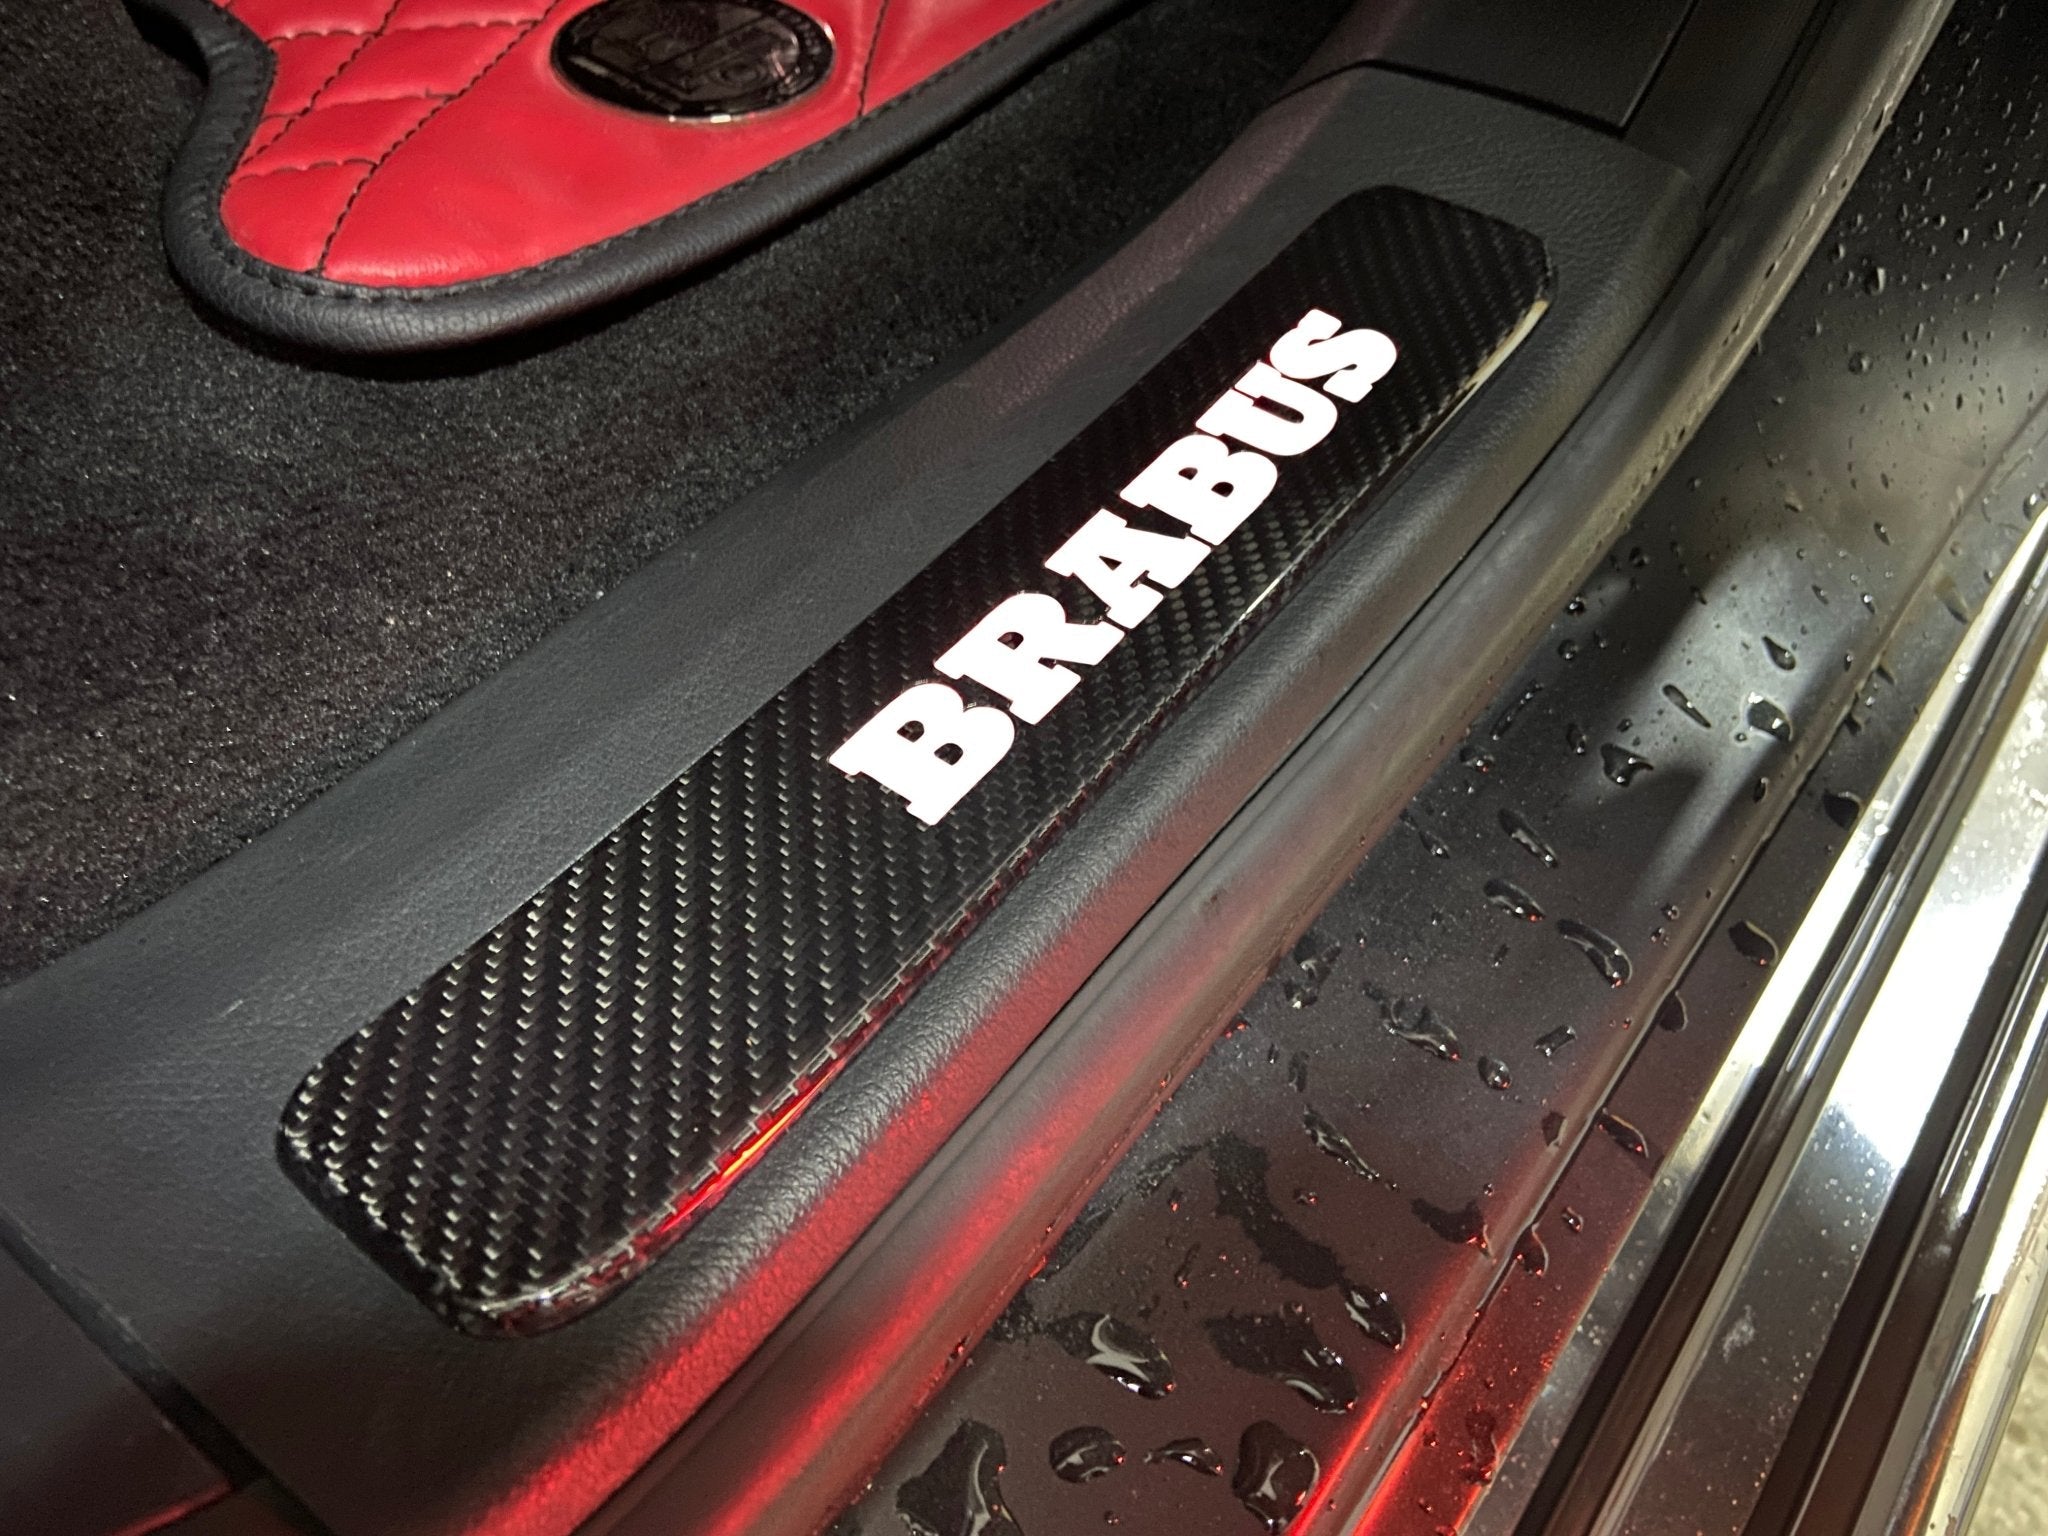 Carbonfaser-Einstiegsleisten im Brabus-Stil, LED, weiß beleuchtet, für Mercedes-Benz W463a W464 G Wagon